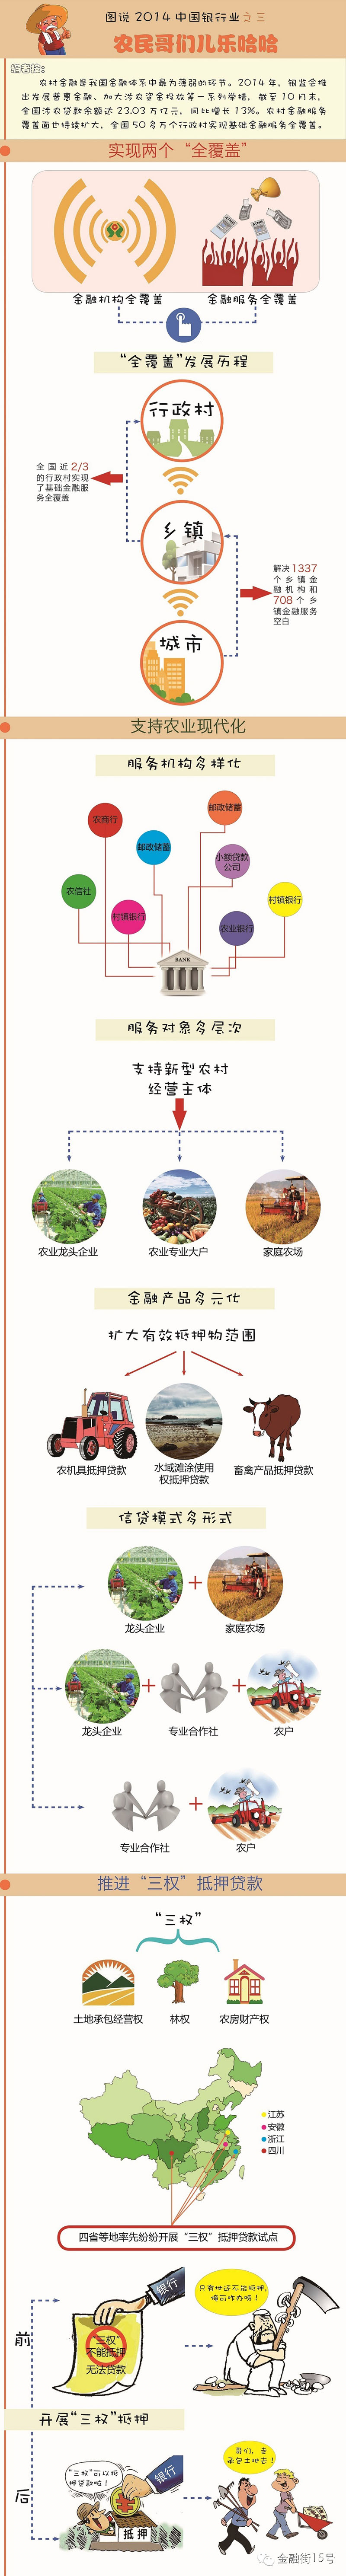 【图说】2014年中国银行业之三：让农民哥们儿乐哈哈